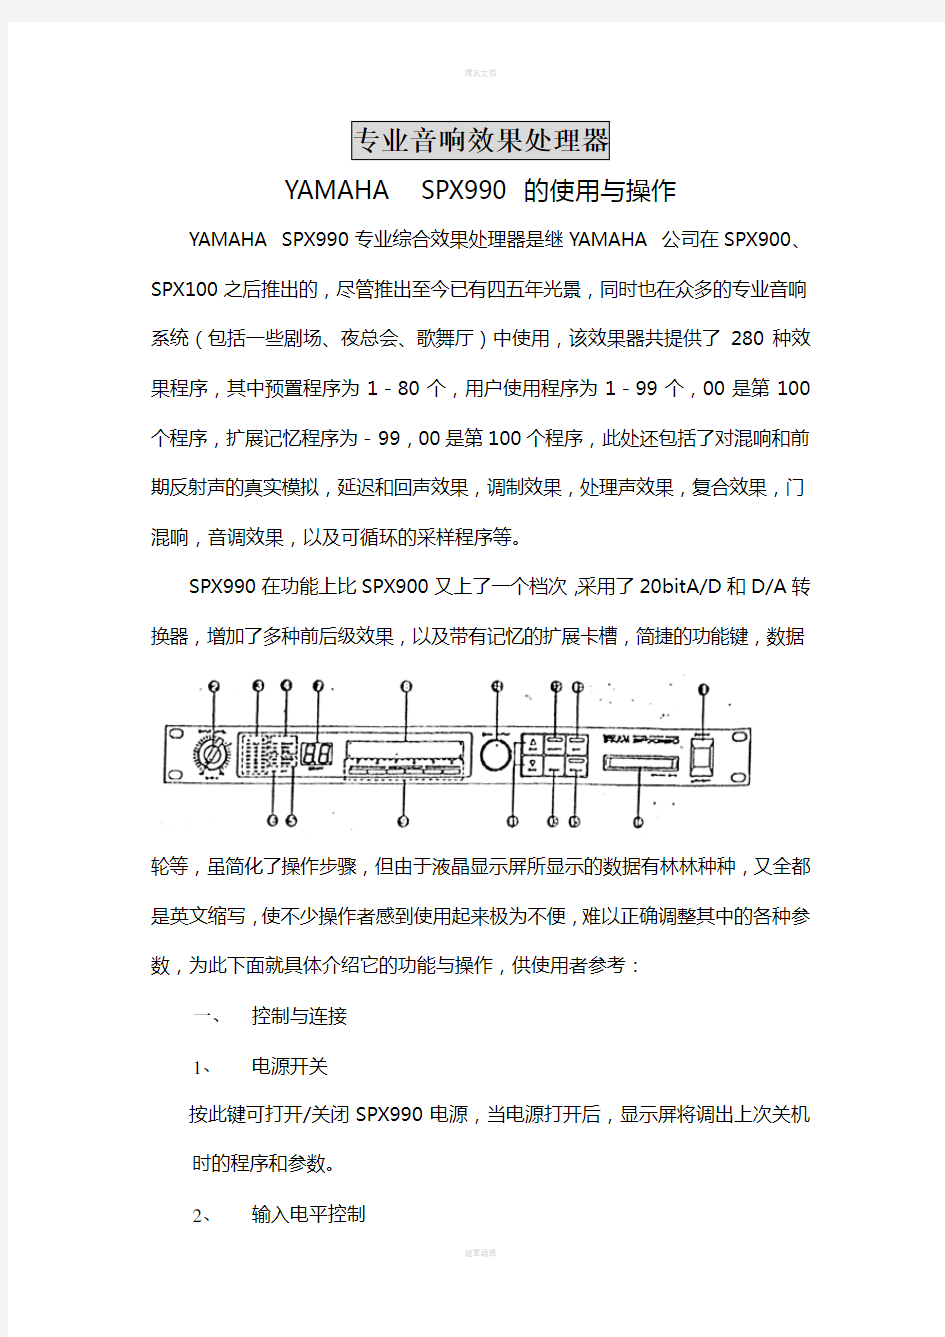 YAMAHA-SPX990效果器中文使用操作说明